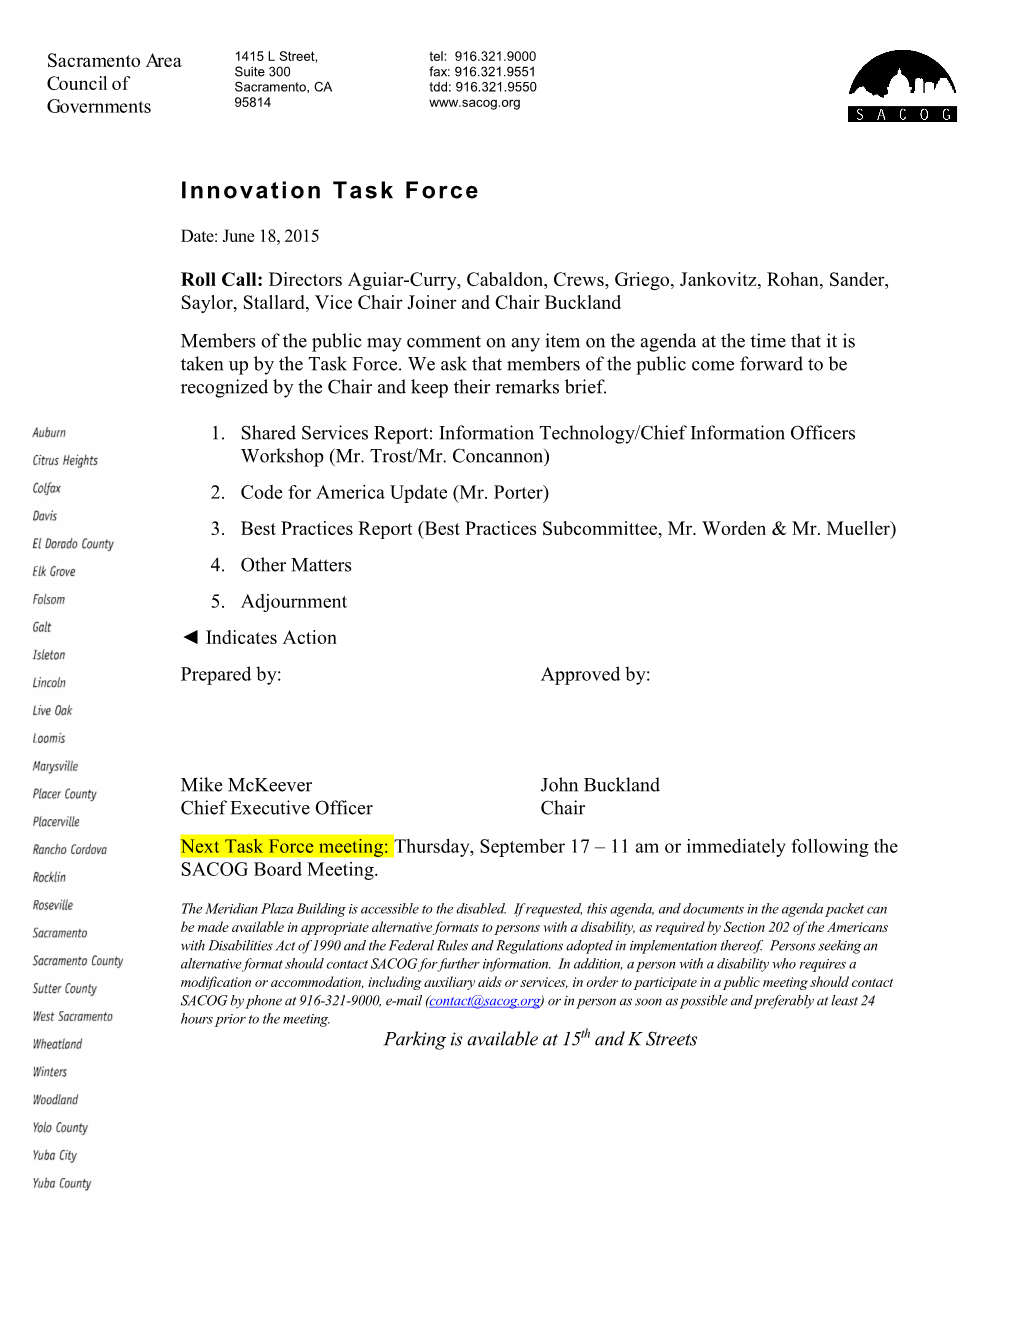 Innovation Task Force